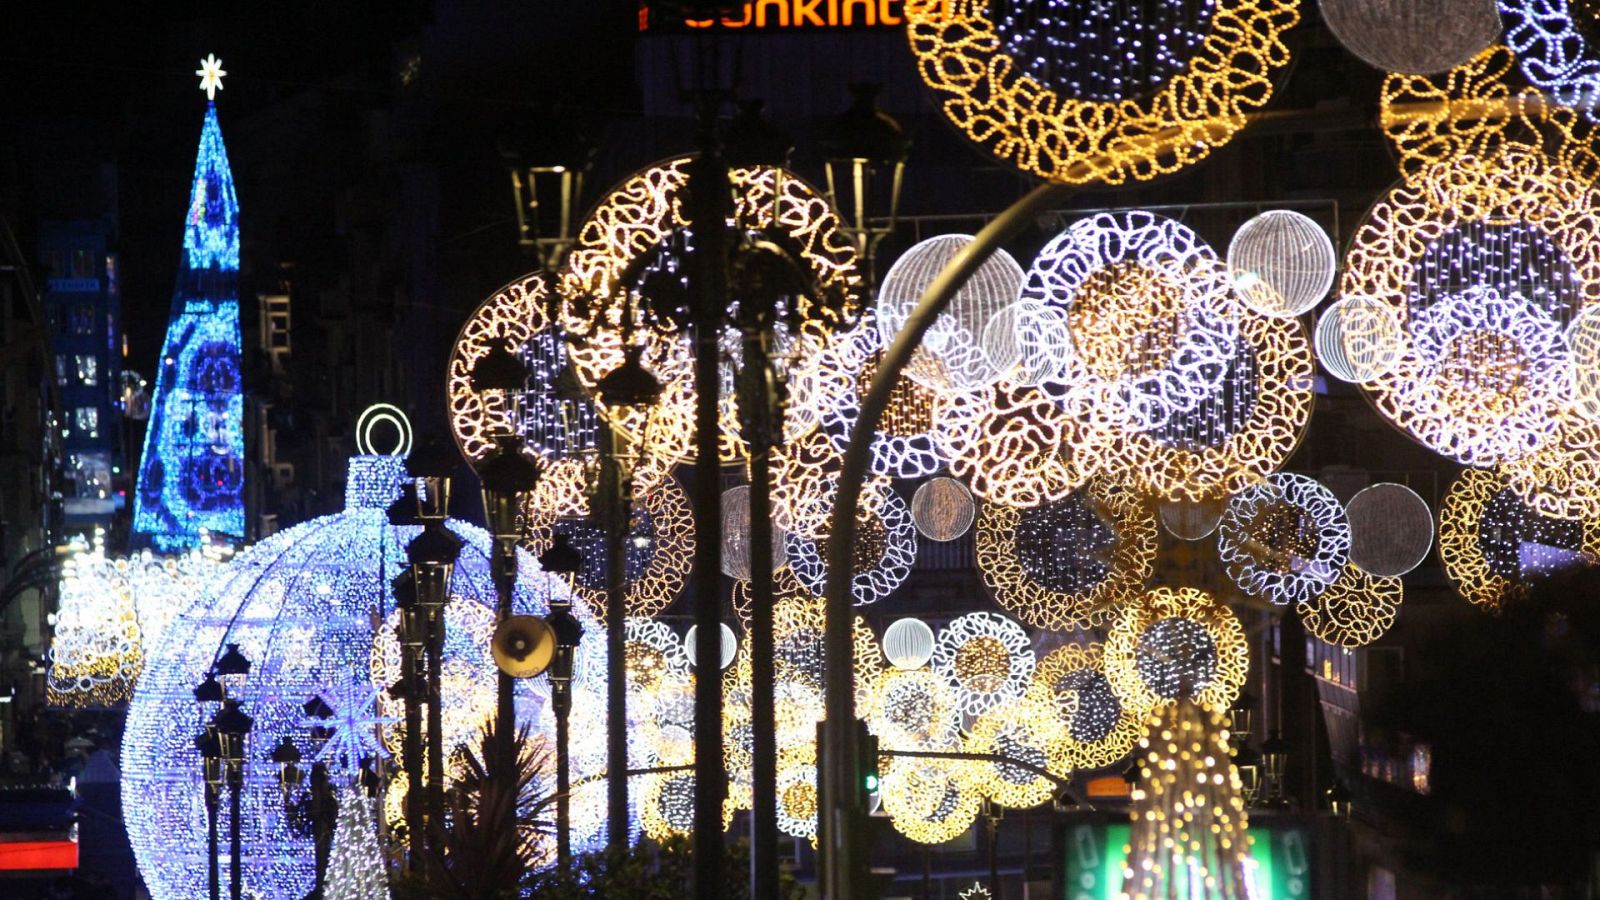 Cuenta atrás para el encendido navideño de Vigo: esperan rebajar el consumo eléctrico un 15 % - Ver ahora